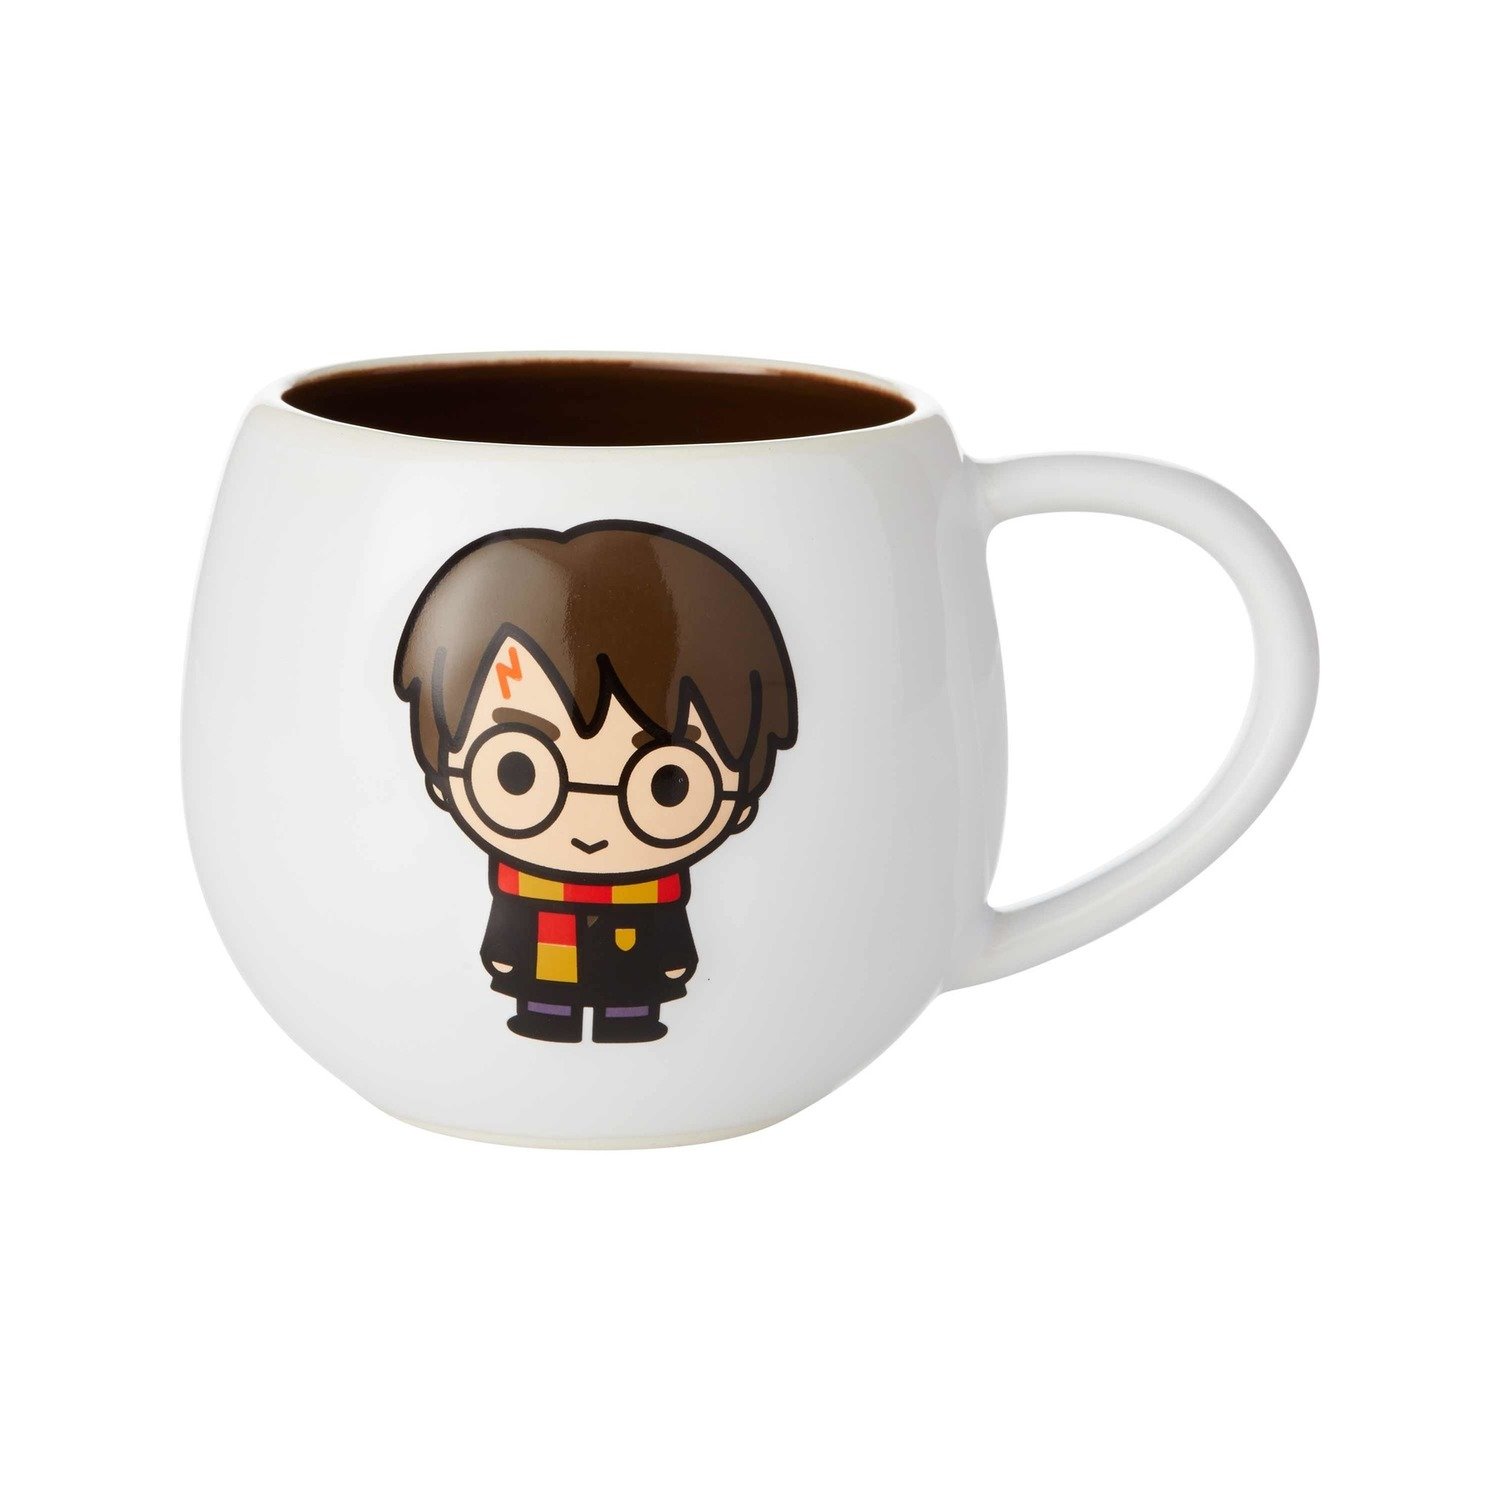 Enesco Harry Potter Character Mug: Harry Potter